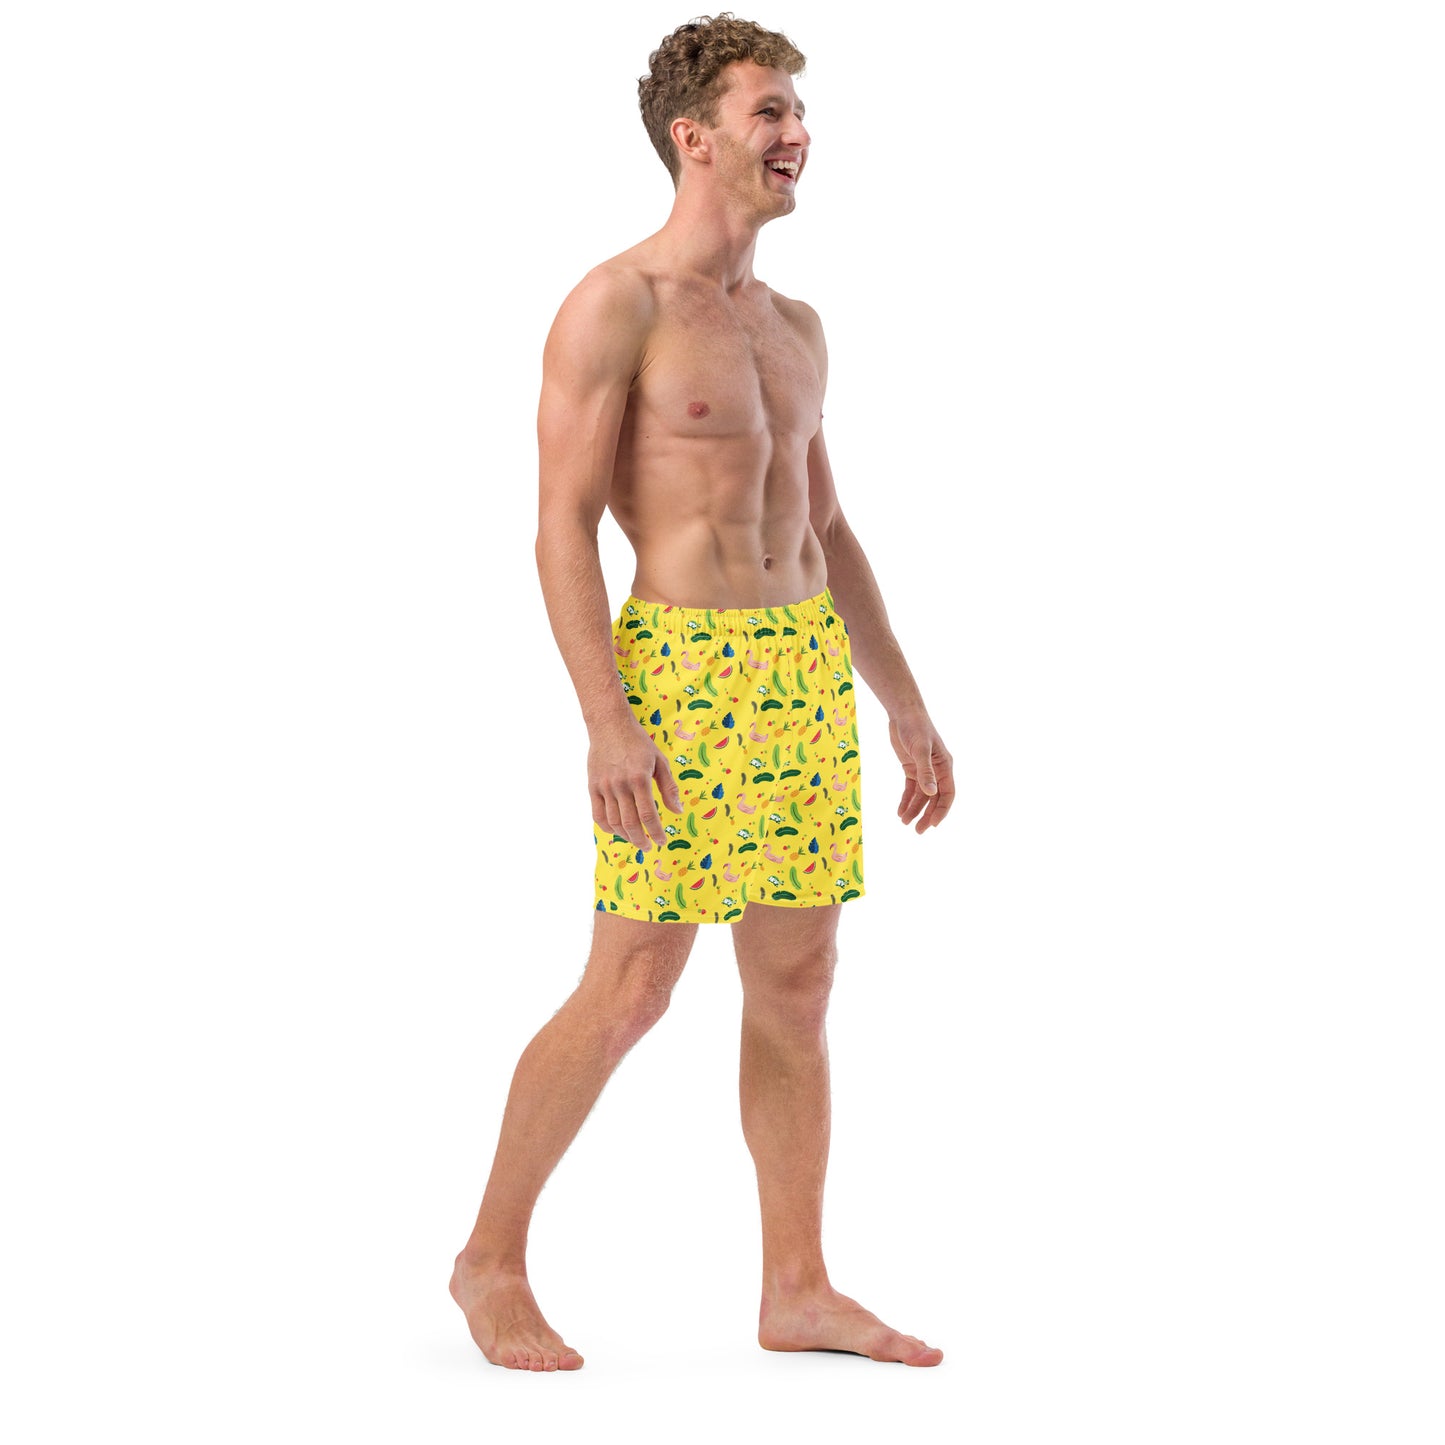 Men's swim trunks "Shell-abration"